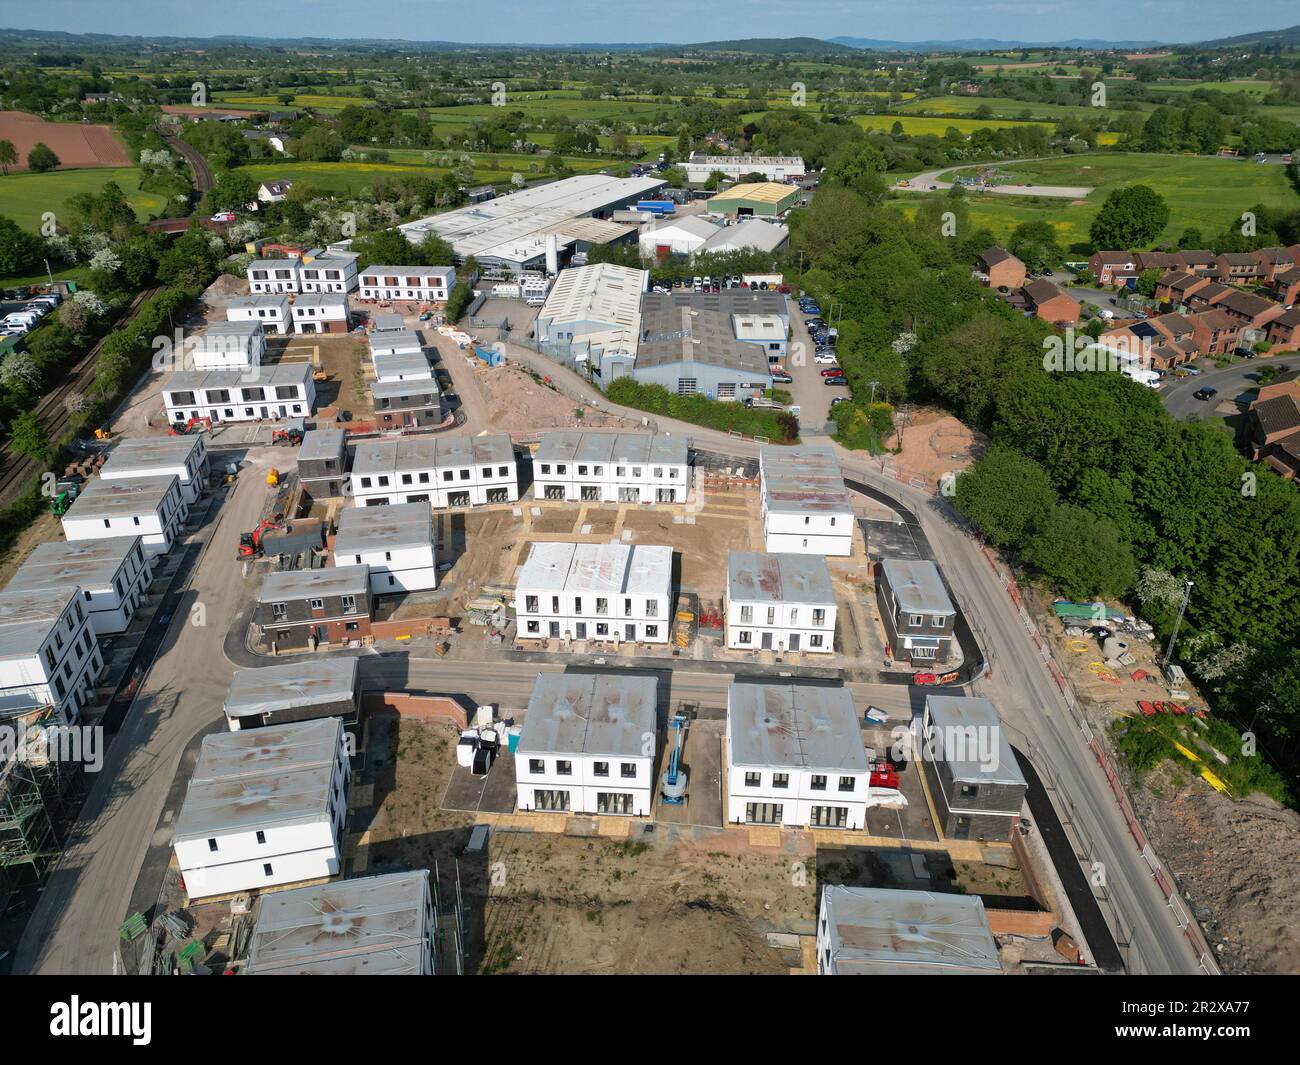 Hereford UK - costruzione di alloggi modulare sito di 120 affitti acquistabili e case di proprietà condivise da Stonewater su un sito di sviluppo brownfield Foto Stock